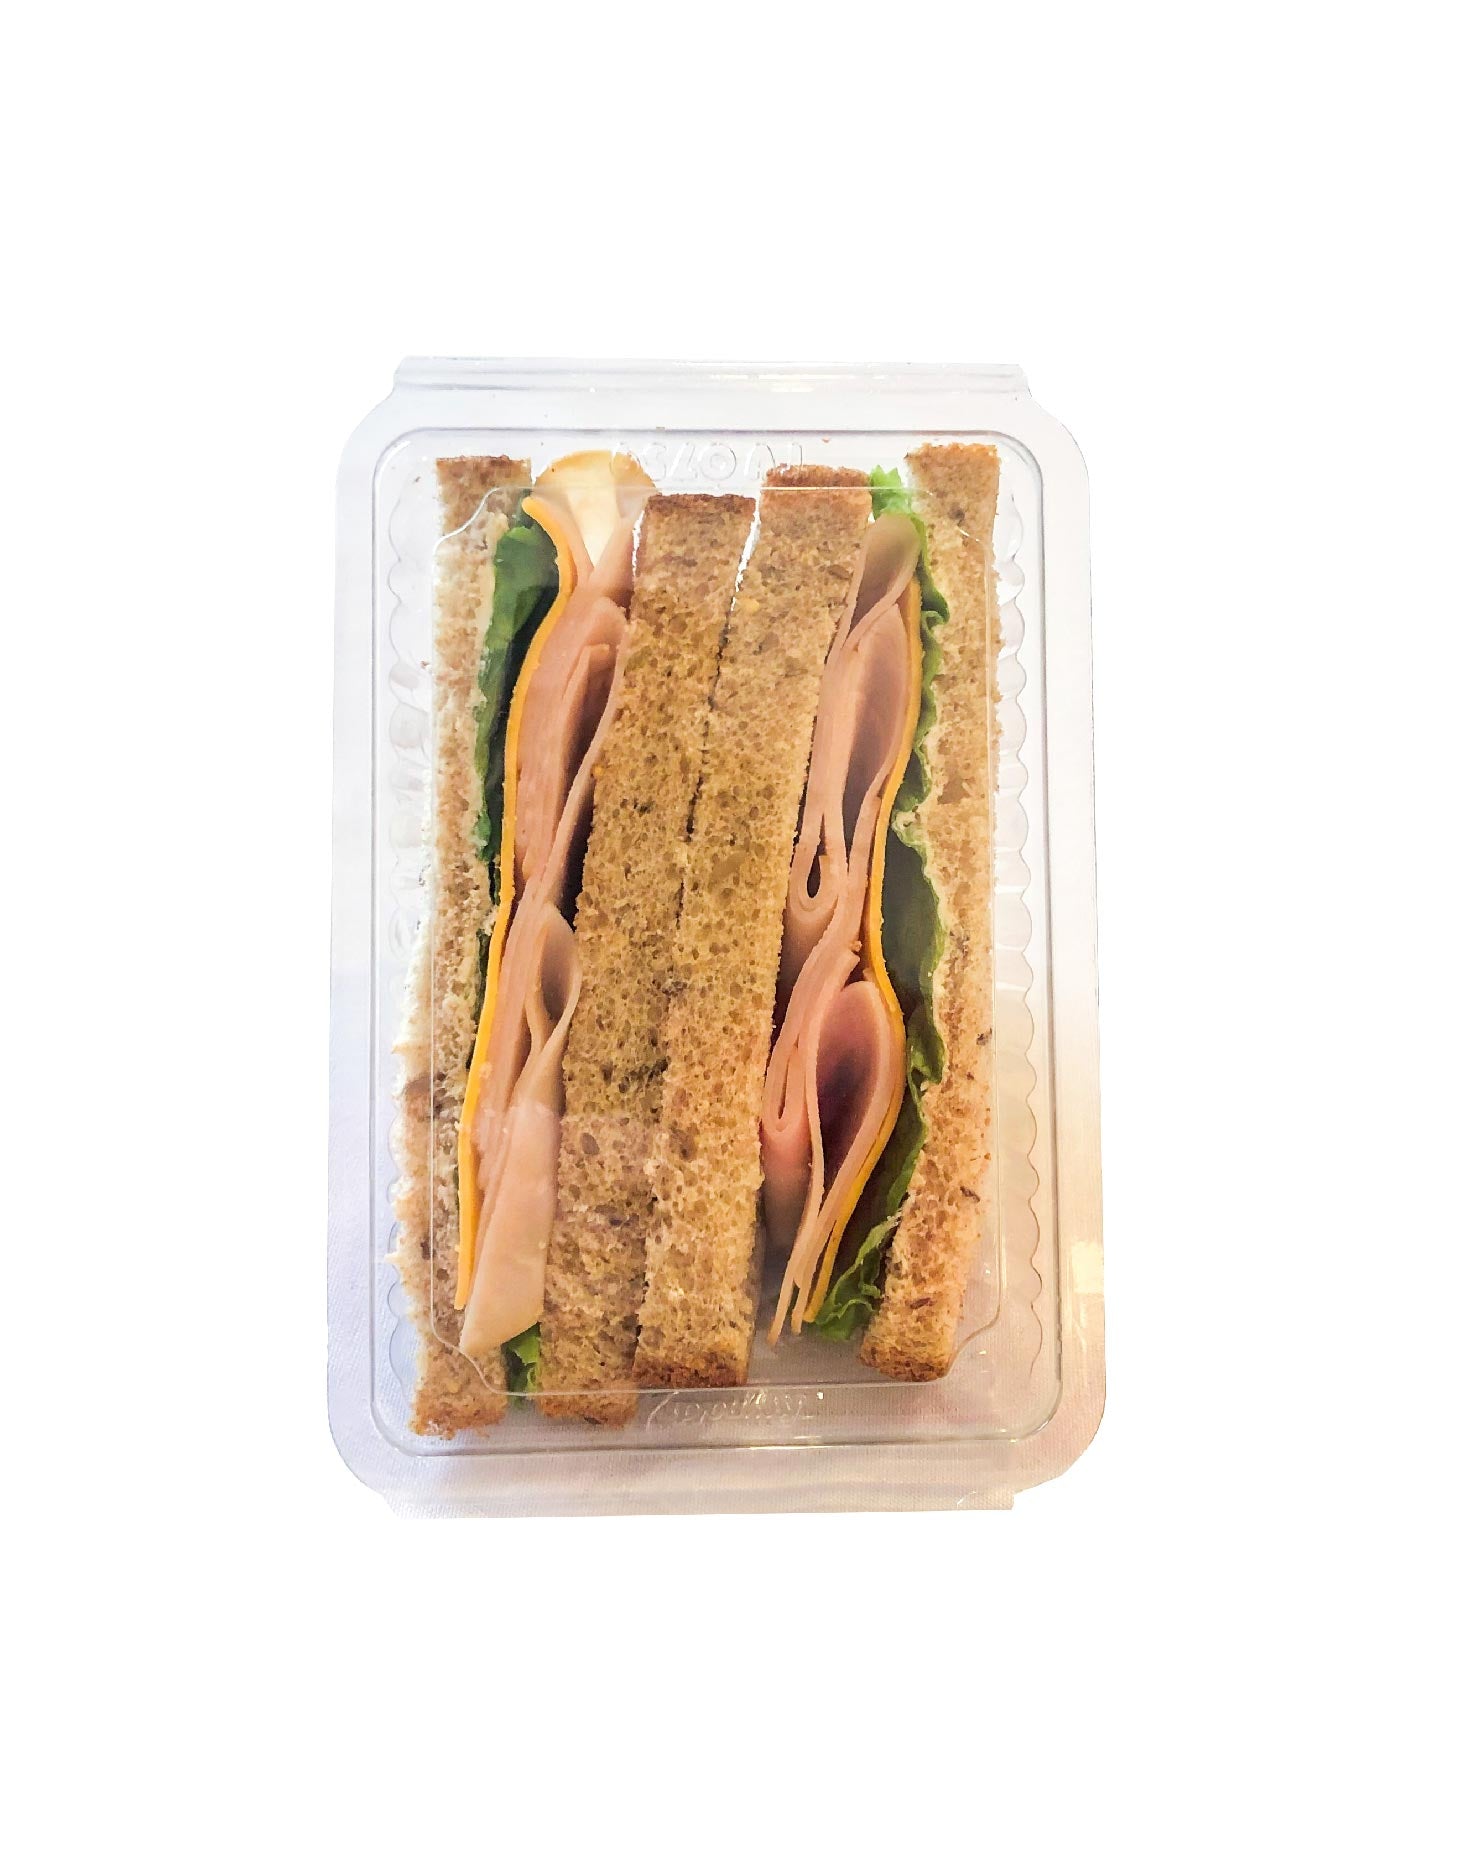 Turkey and Cheddar Multigrain Sandwich